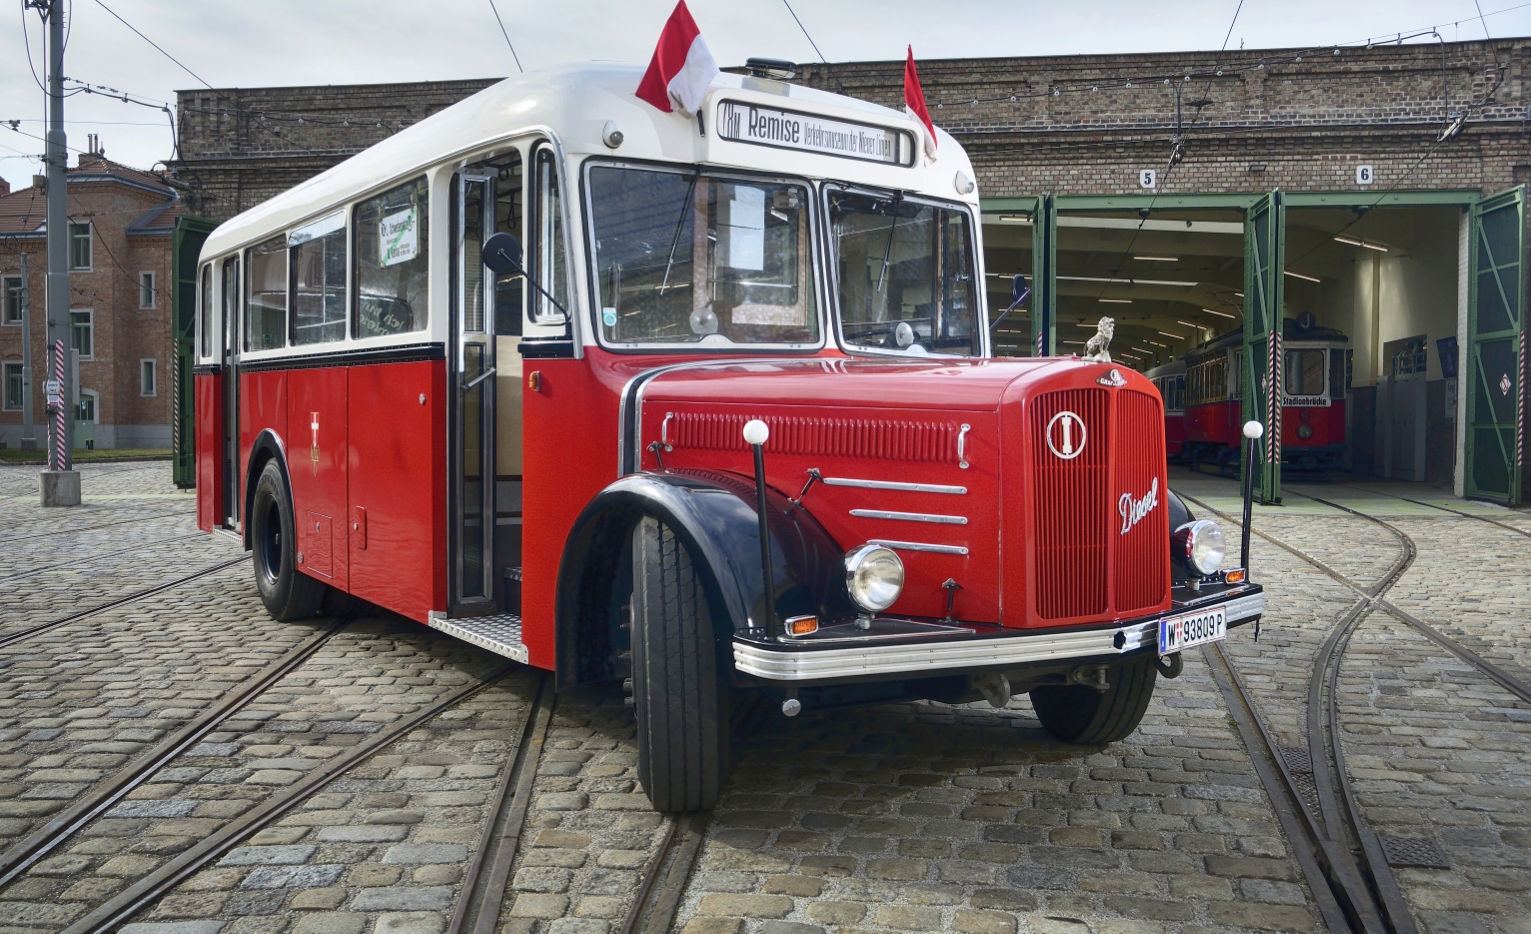 Ab 15. März 2015 verkehrt an den Wochenenden ein Oldtimer-Shuttlebus (Linie 78M) aus dem Jahr 1949 zwischen Schwedenplatz und dem Verkehrsmuseum Remise in Erdberg.